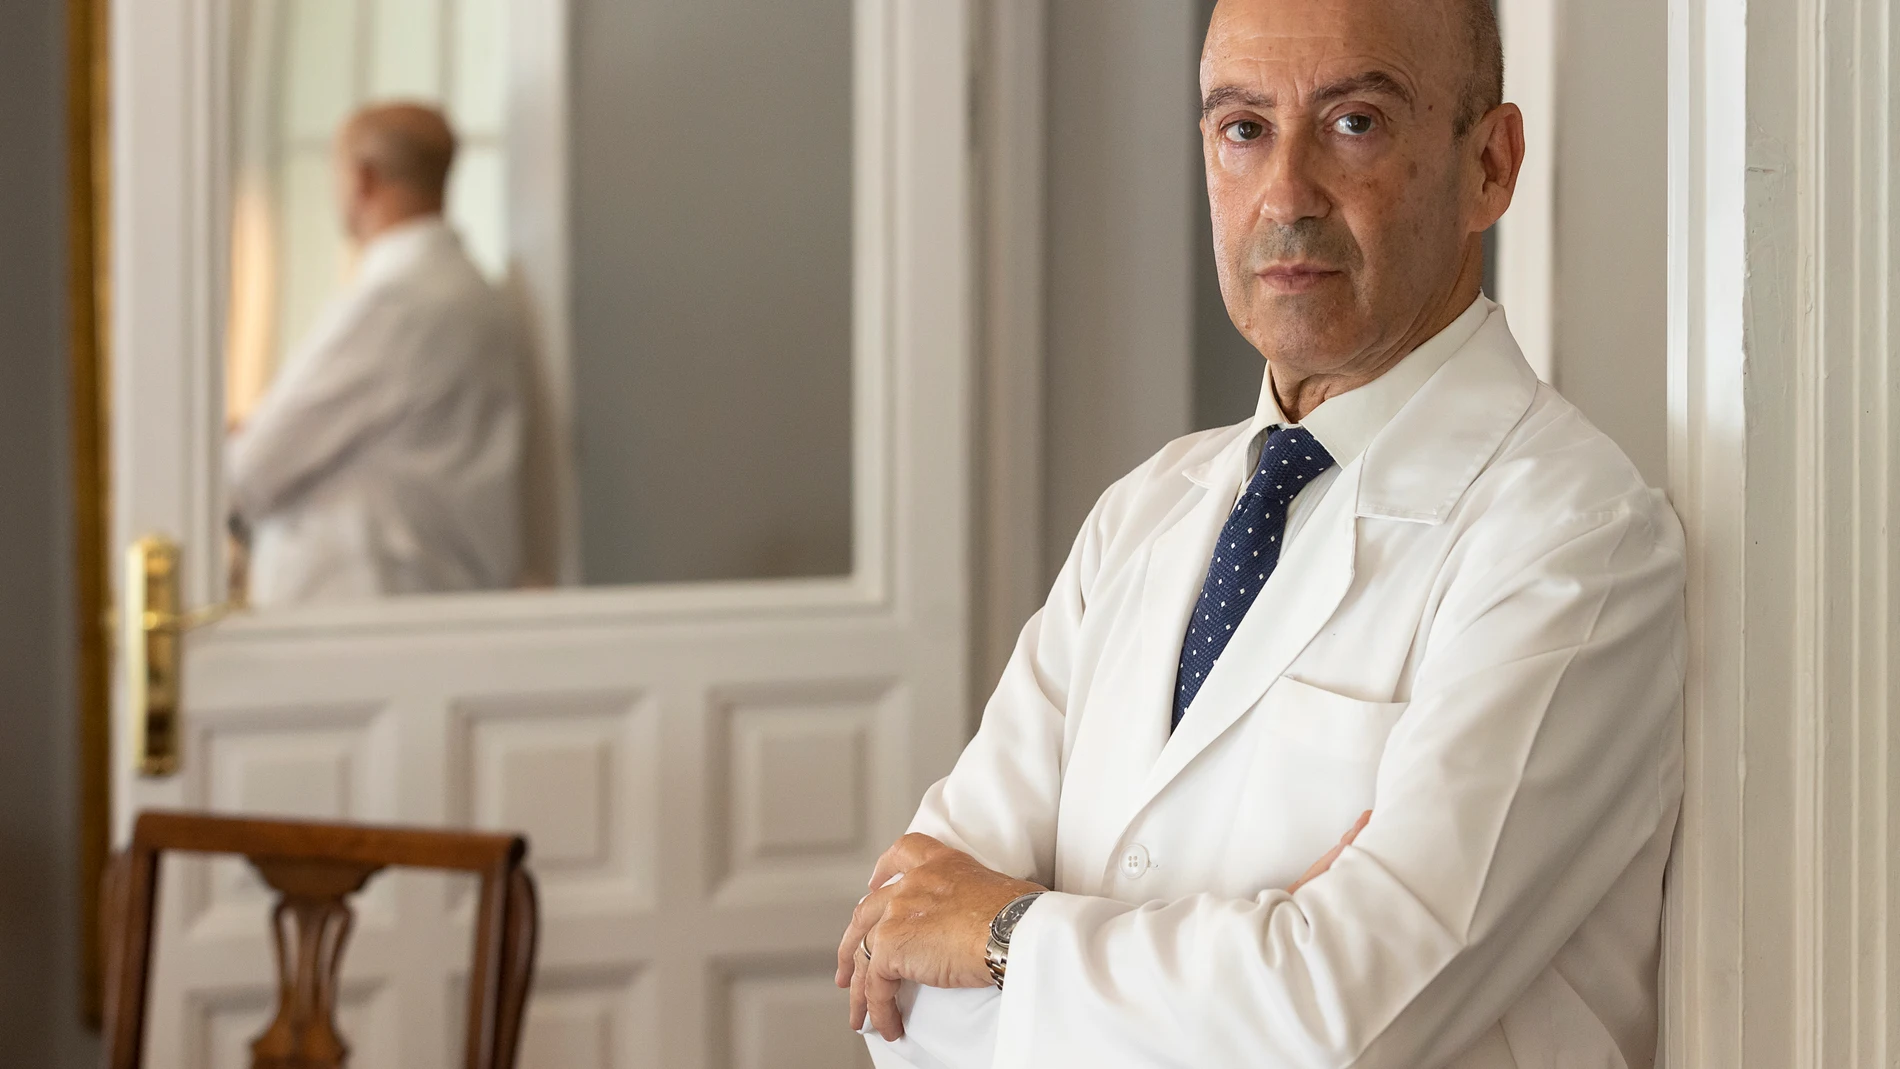 Juan Ruiz de Burgos Moreno, especialista en Urología, es candidato a la presidencia del Colegio de Médicos de Madrid, Icomem